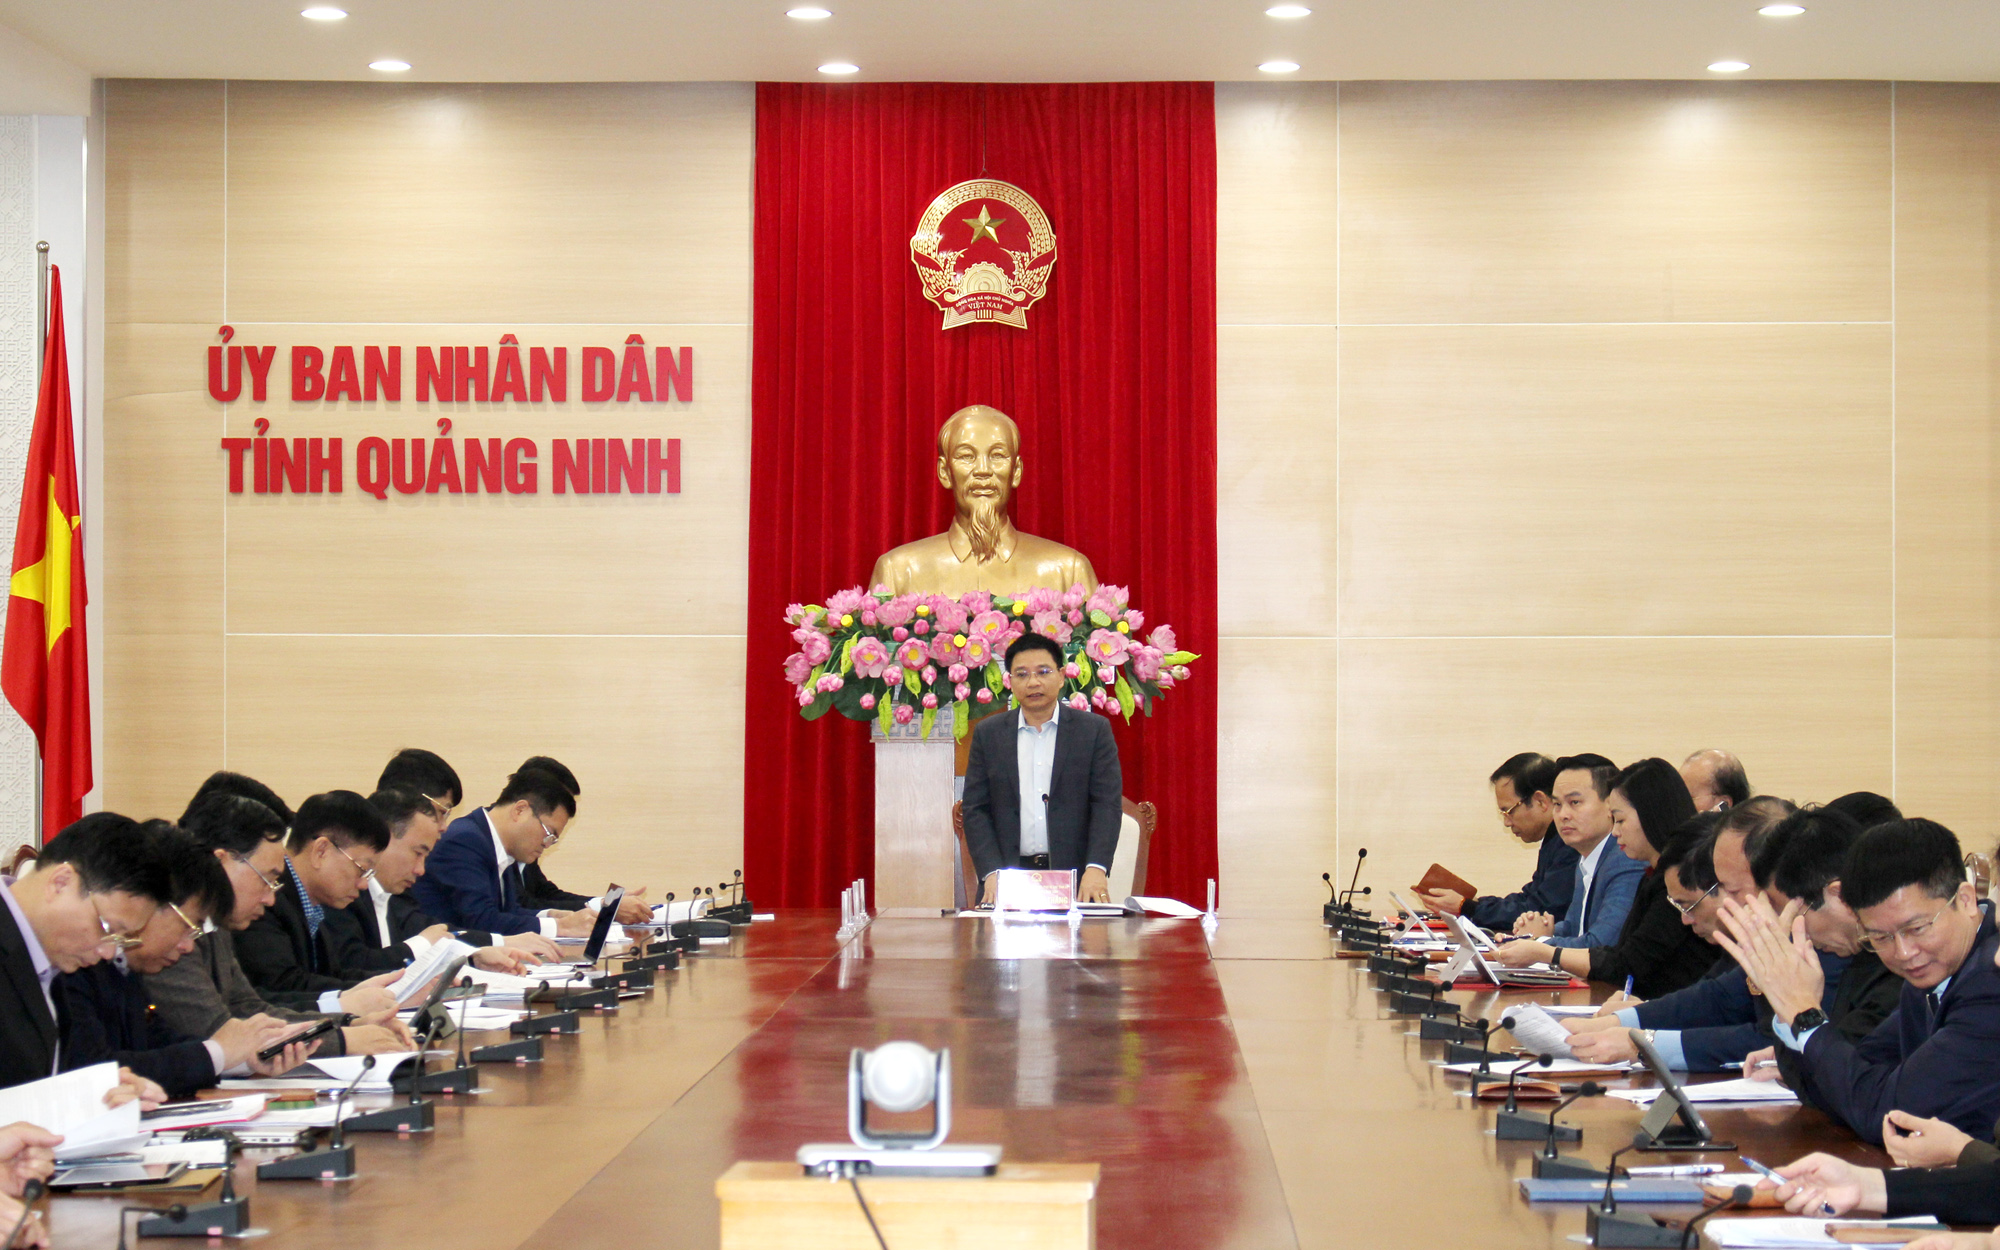 Đồng chí Nguyễn Văn Thắng, Chủ tịch UBND tỉnh, kết luận hội nghị.